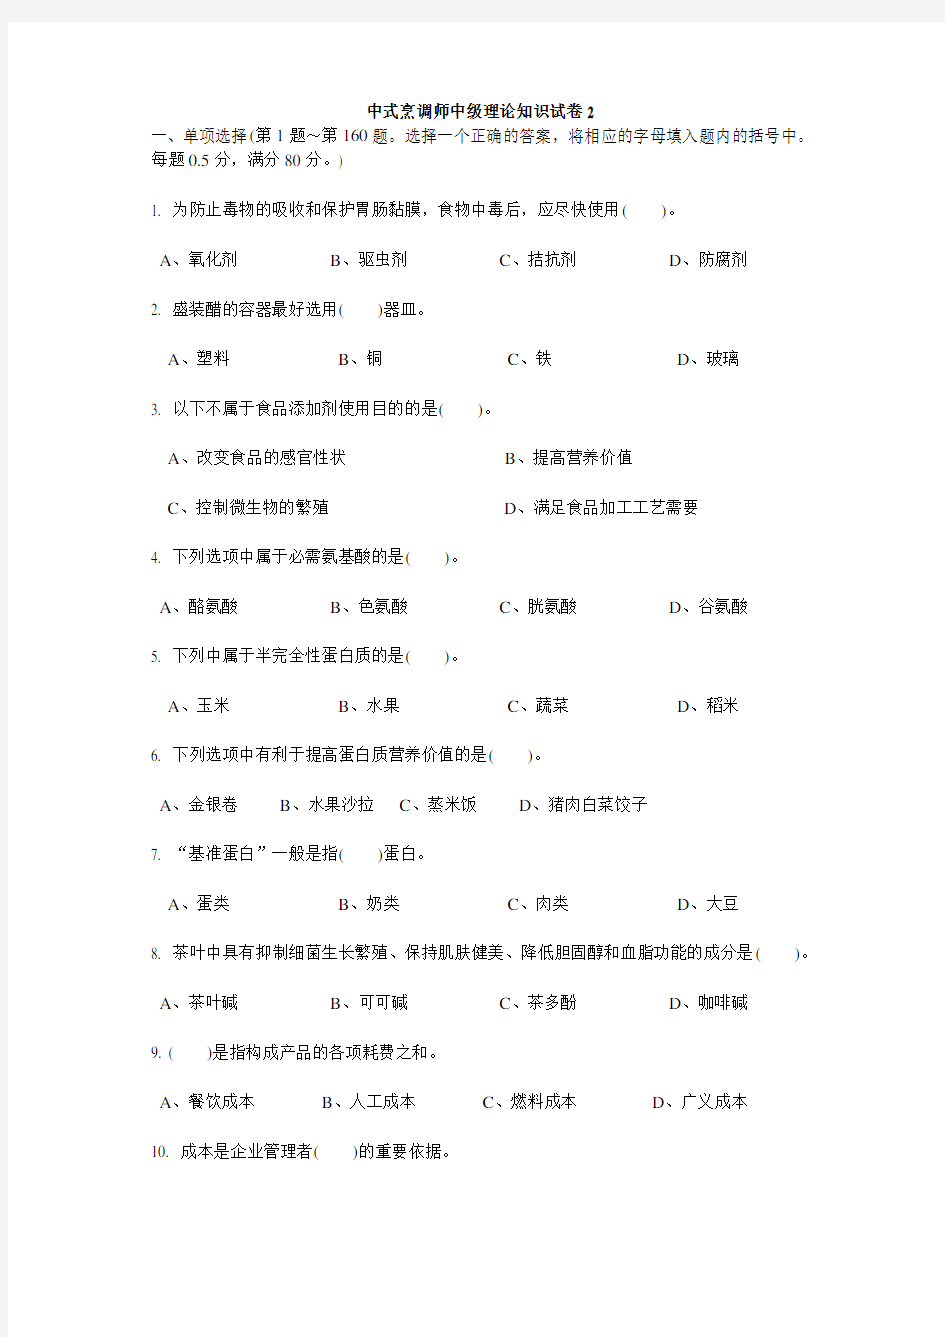 中式烹调师中级理论知识试卷2